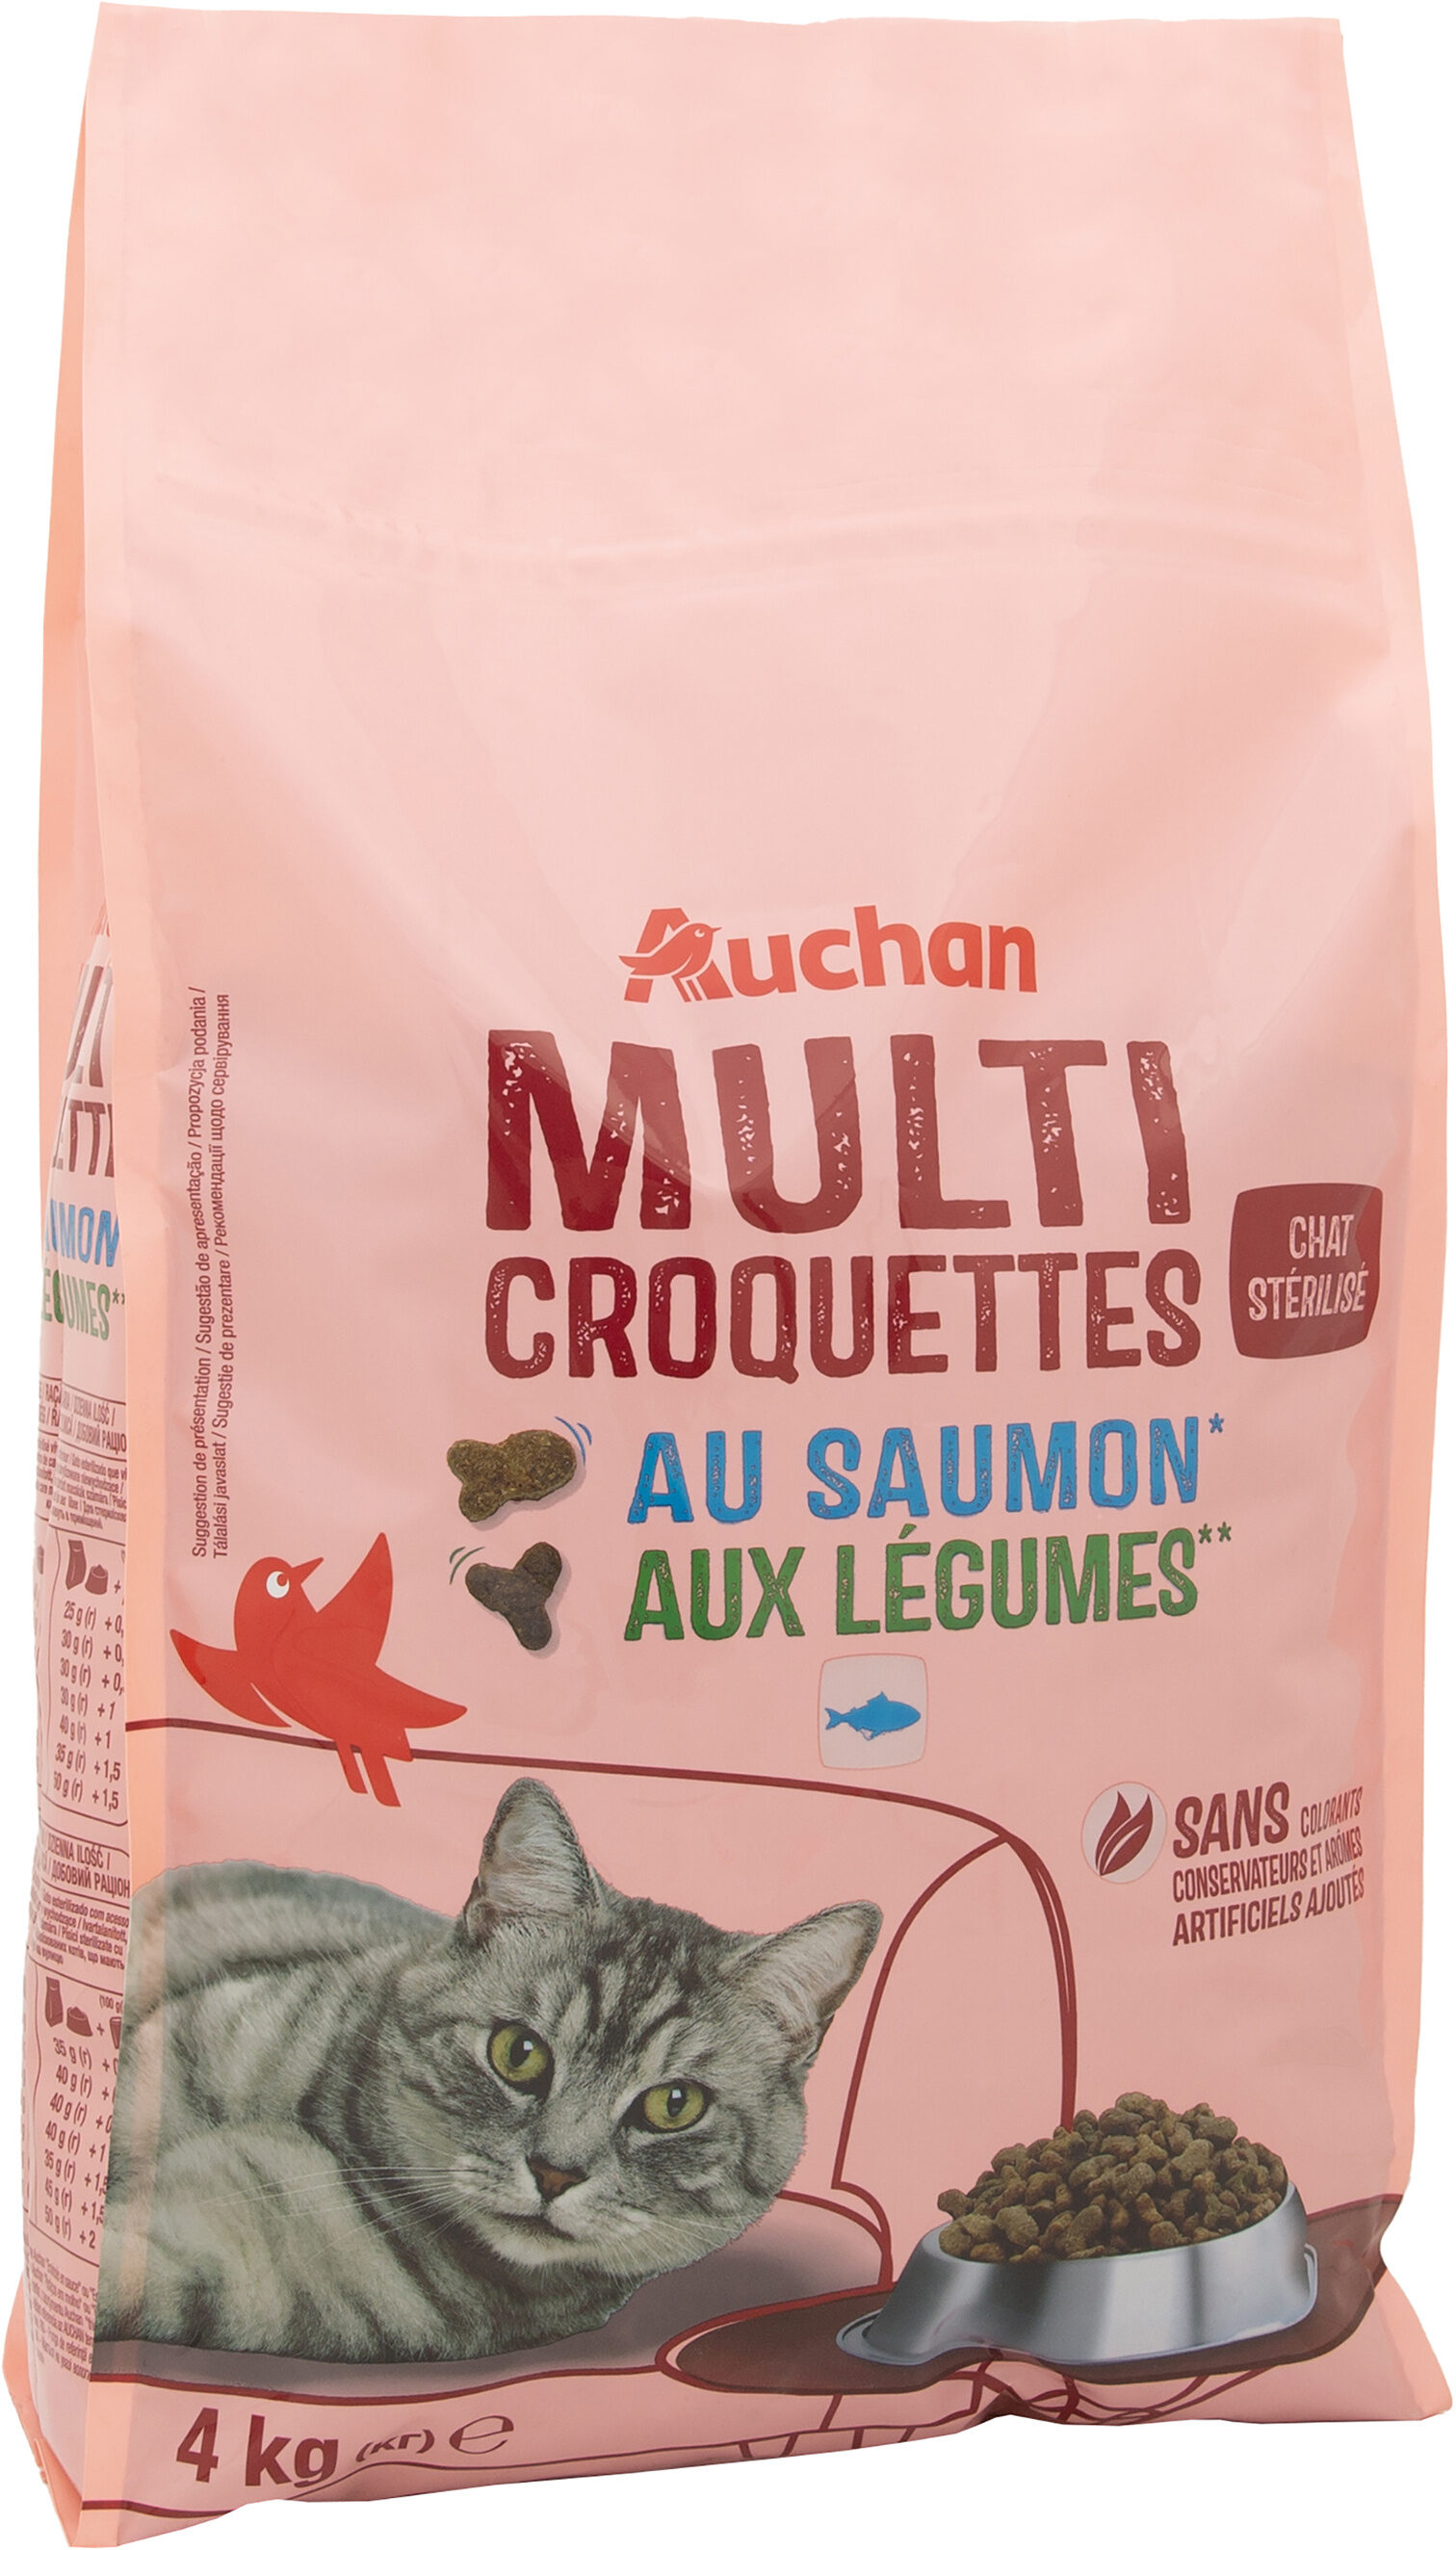 Multi croquettes au saumon* aux légumes** chat stérilisé - Produit - fr